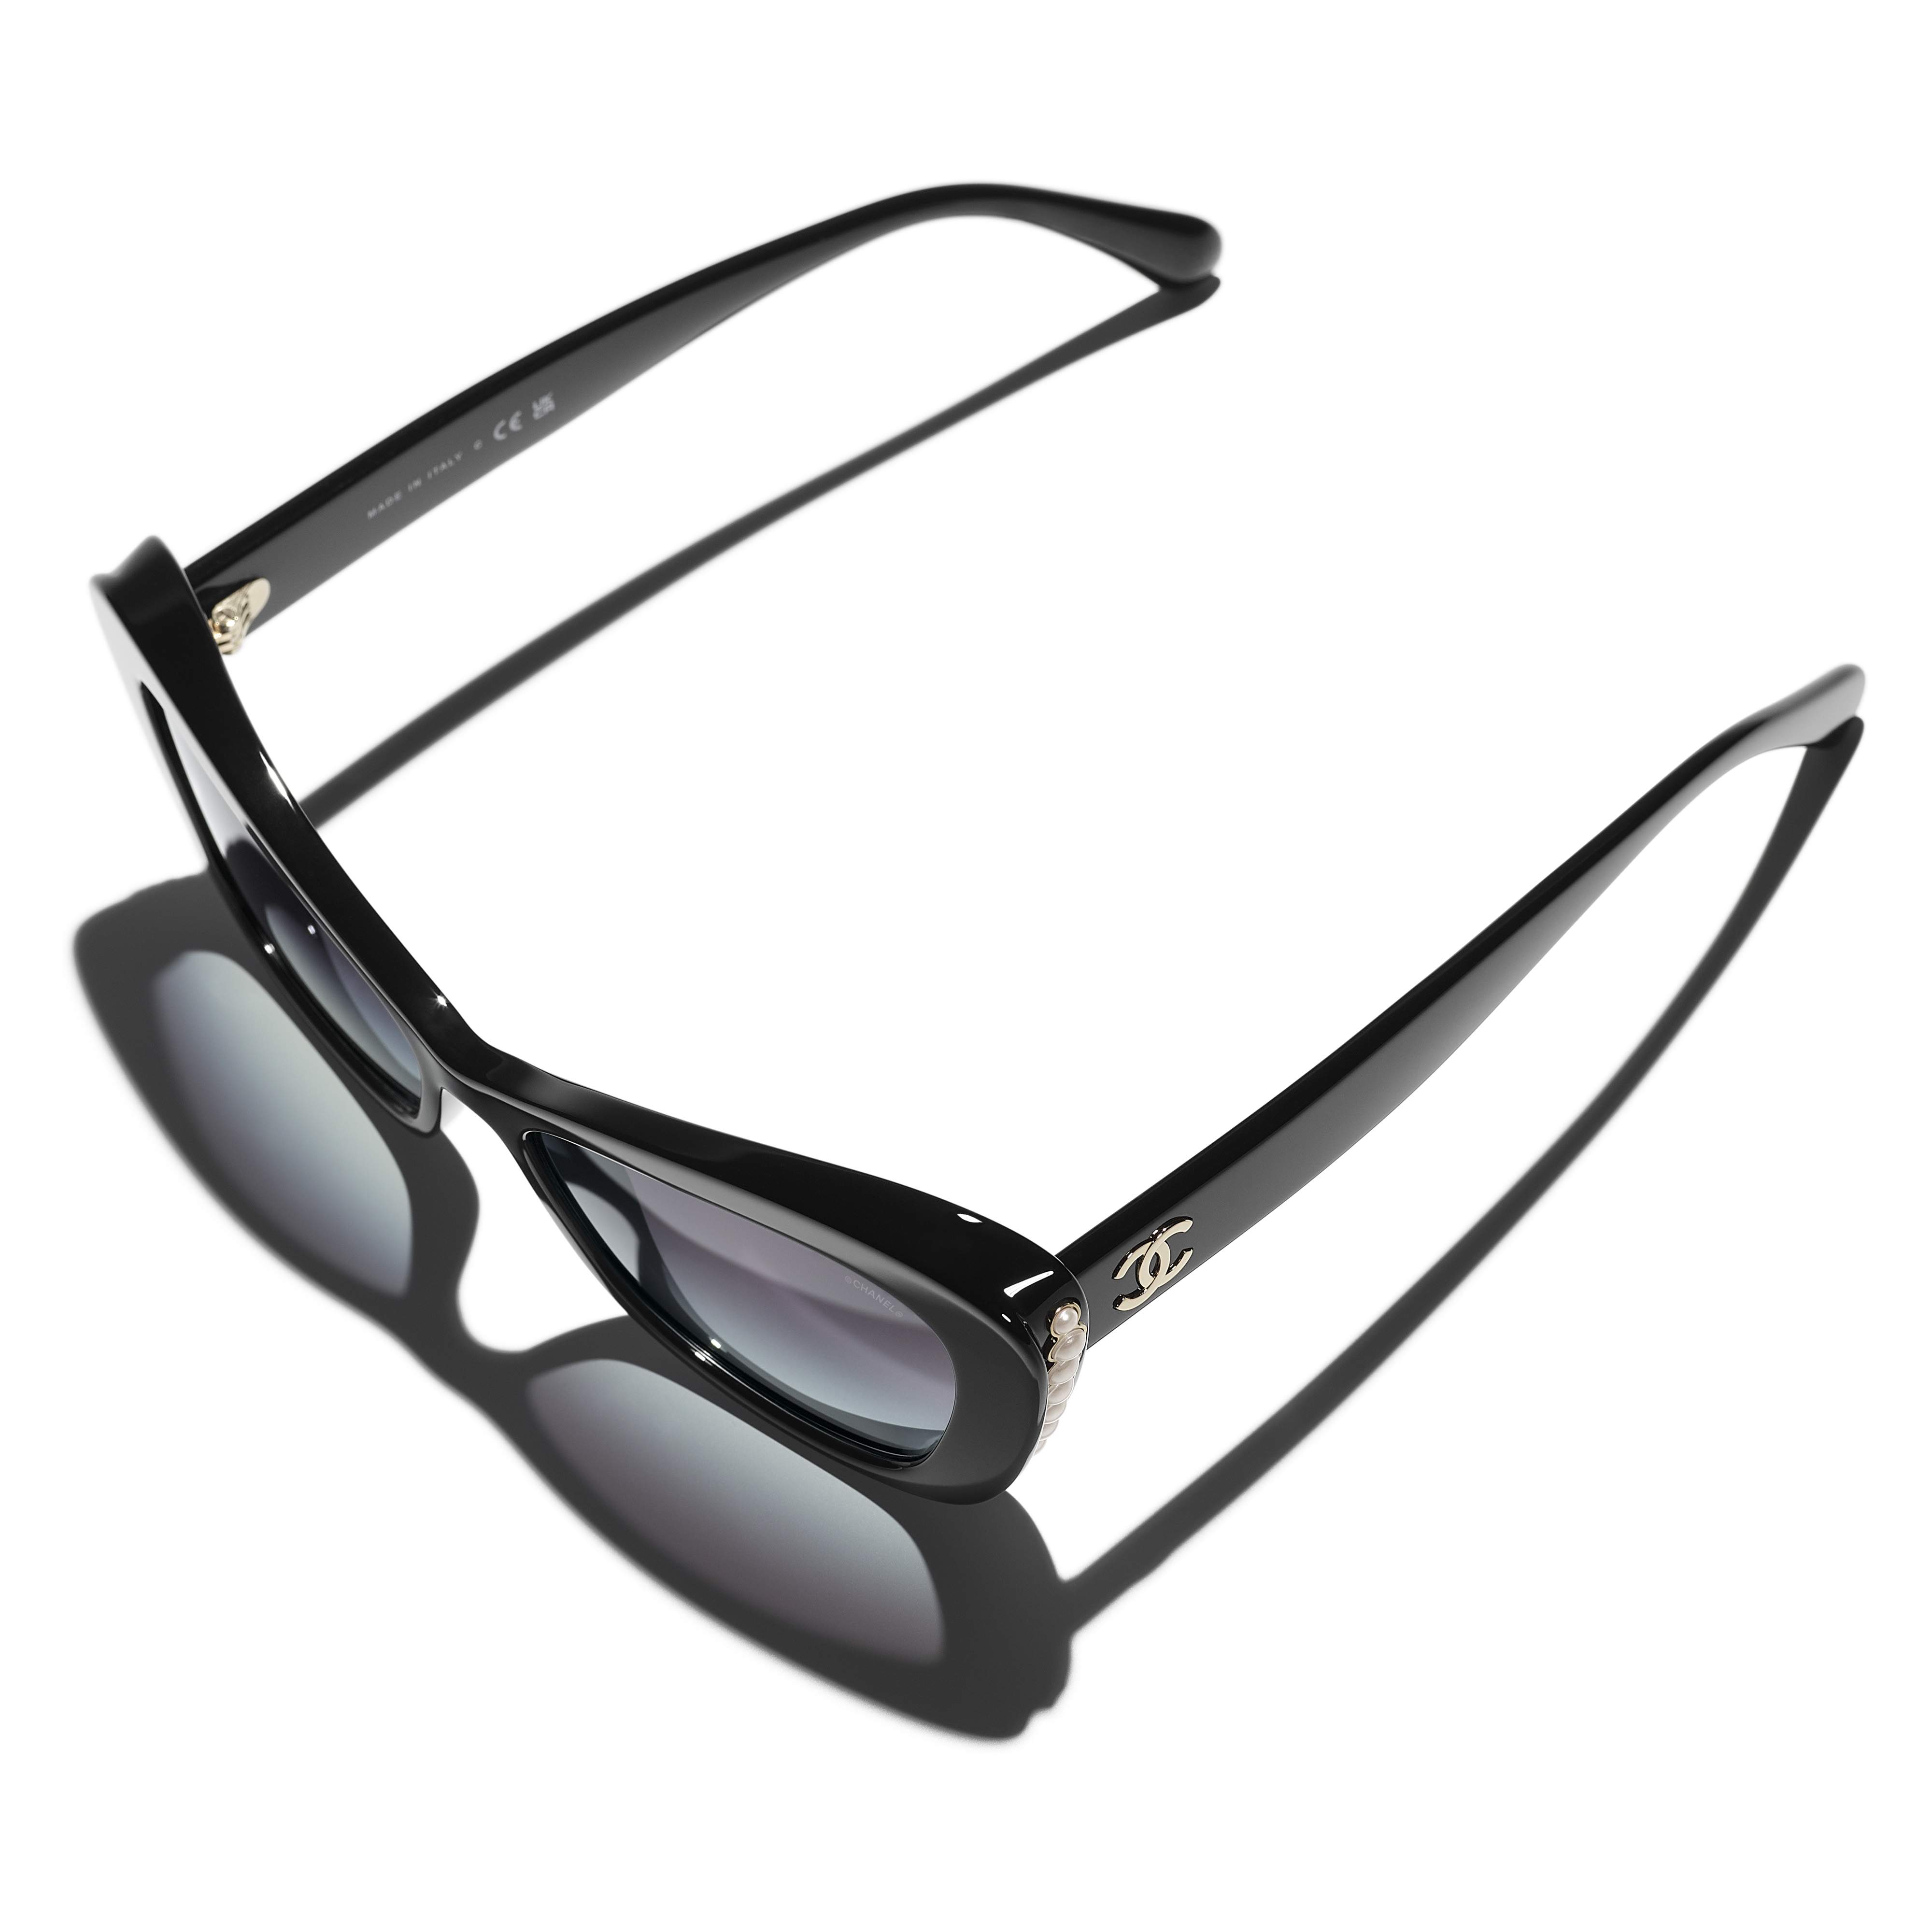 Sunglasses CHANEL CH5496B C622/S6 56-16 Black in stock